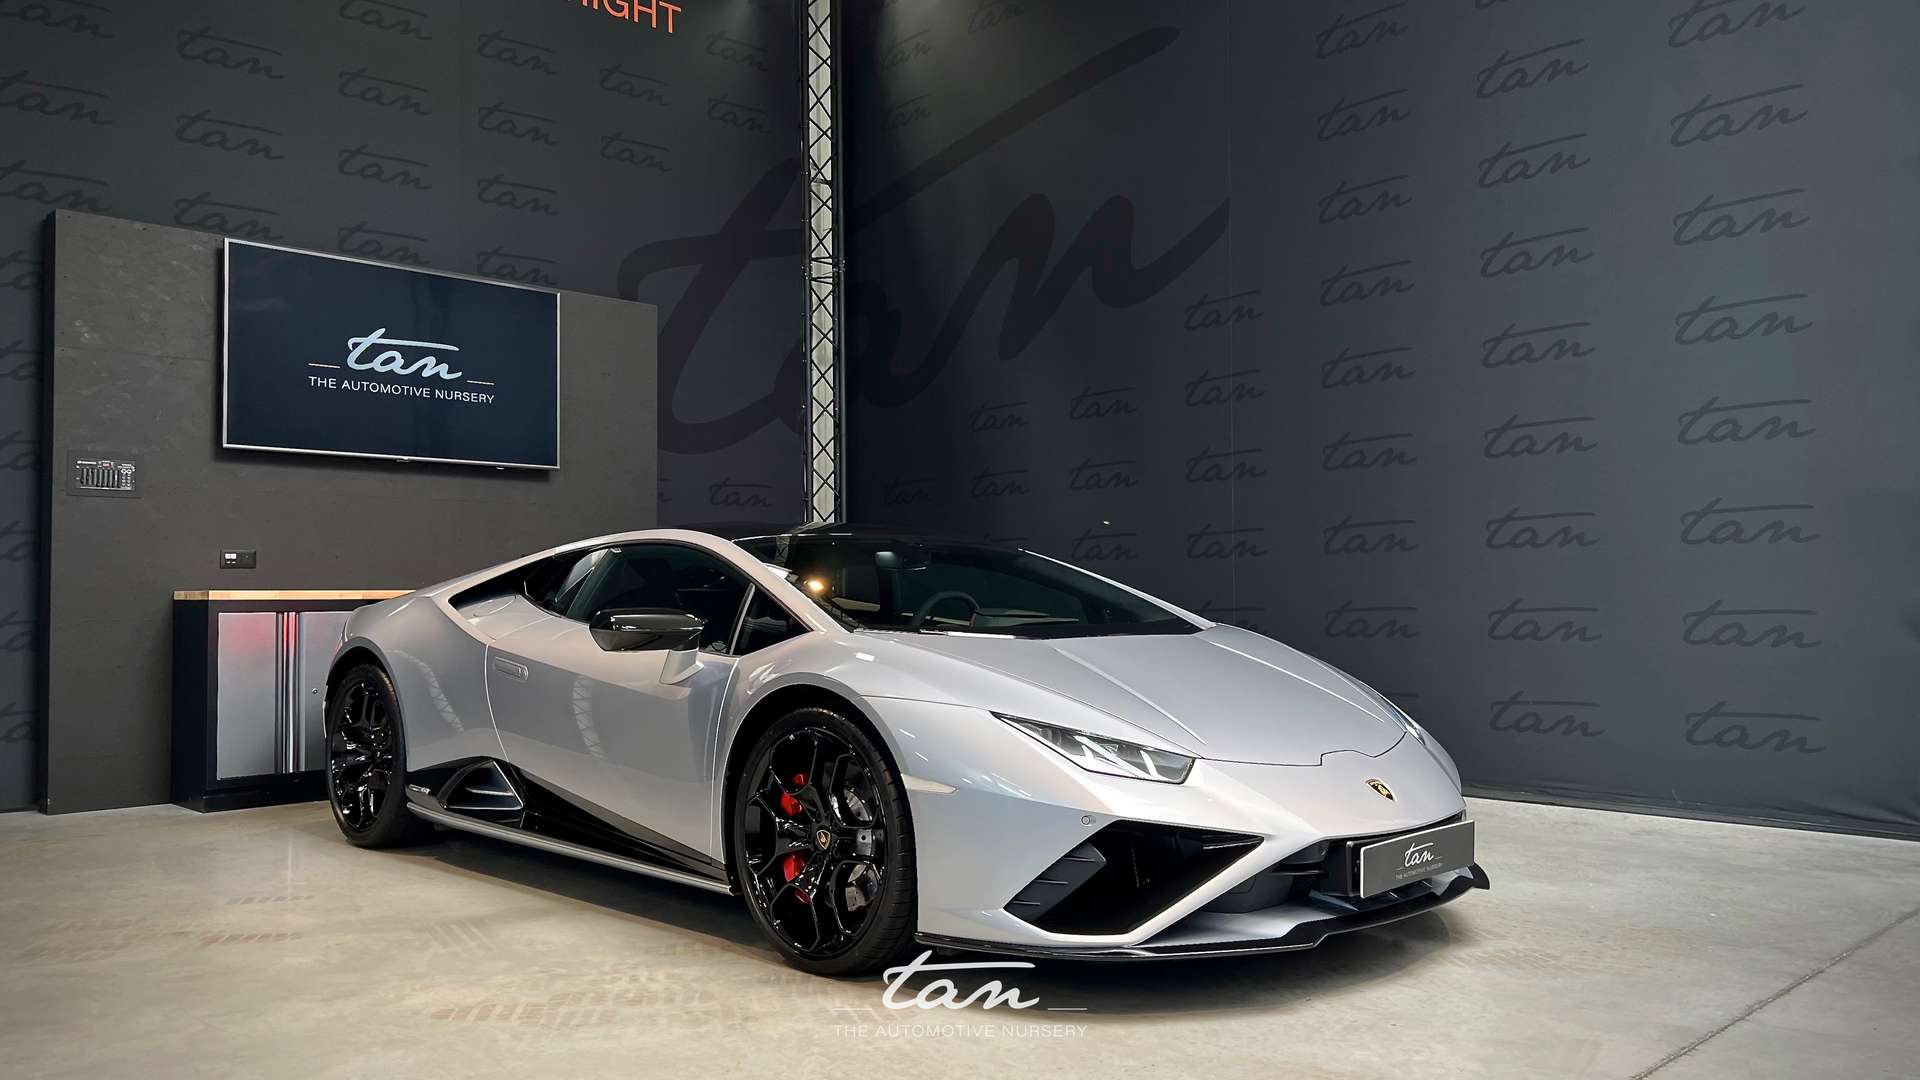 Lamborghini Huracan Coupé en Gris occasion à NAMUR pour € 299 610,-